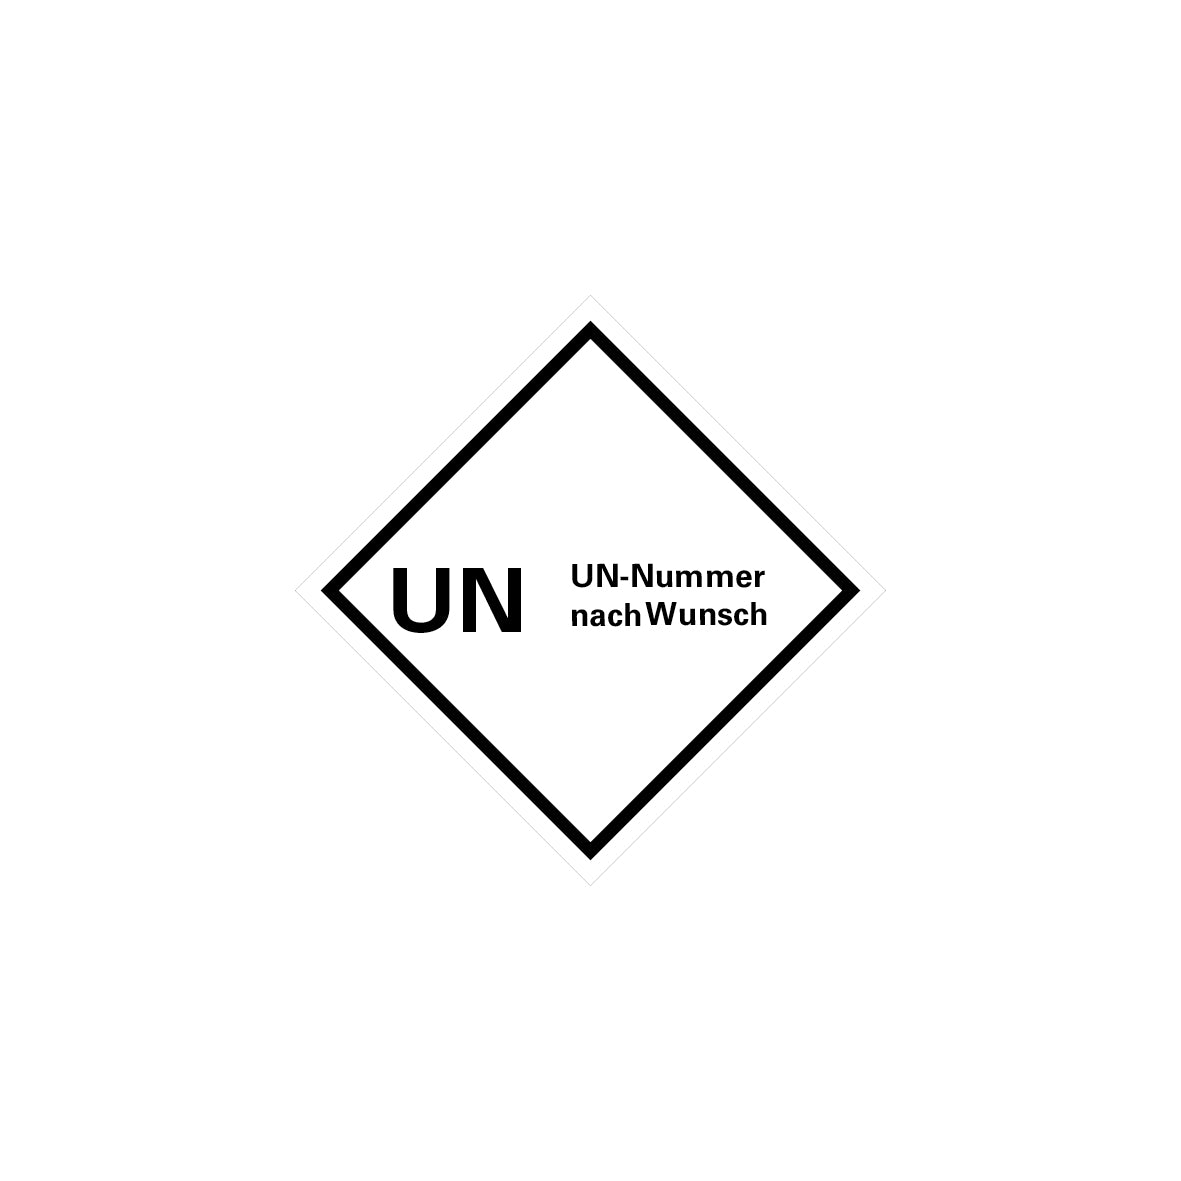 Gefahrgut UN, 5.0159, 100 x 100 mm, Stk., UN mit UN-Nummern, auf Bogen, VE 100 Stk.